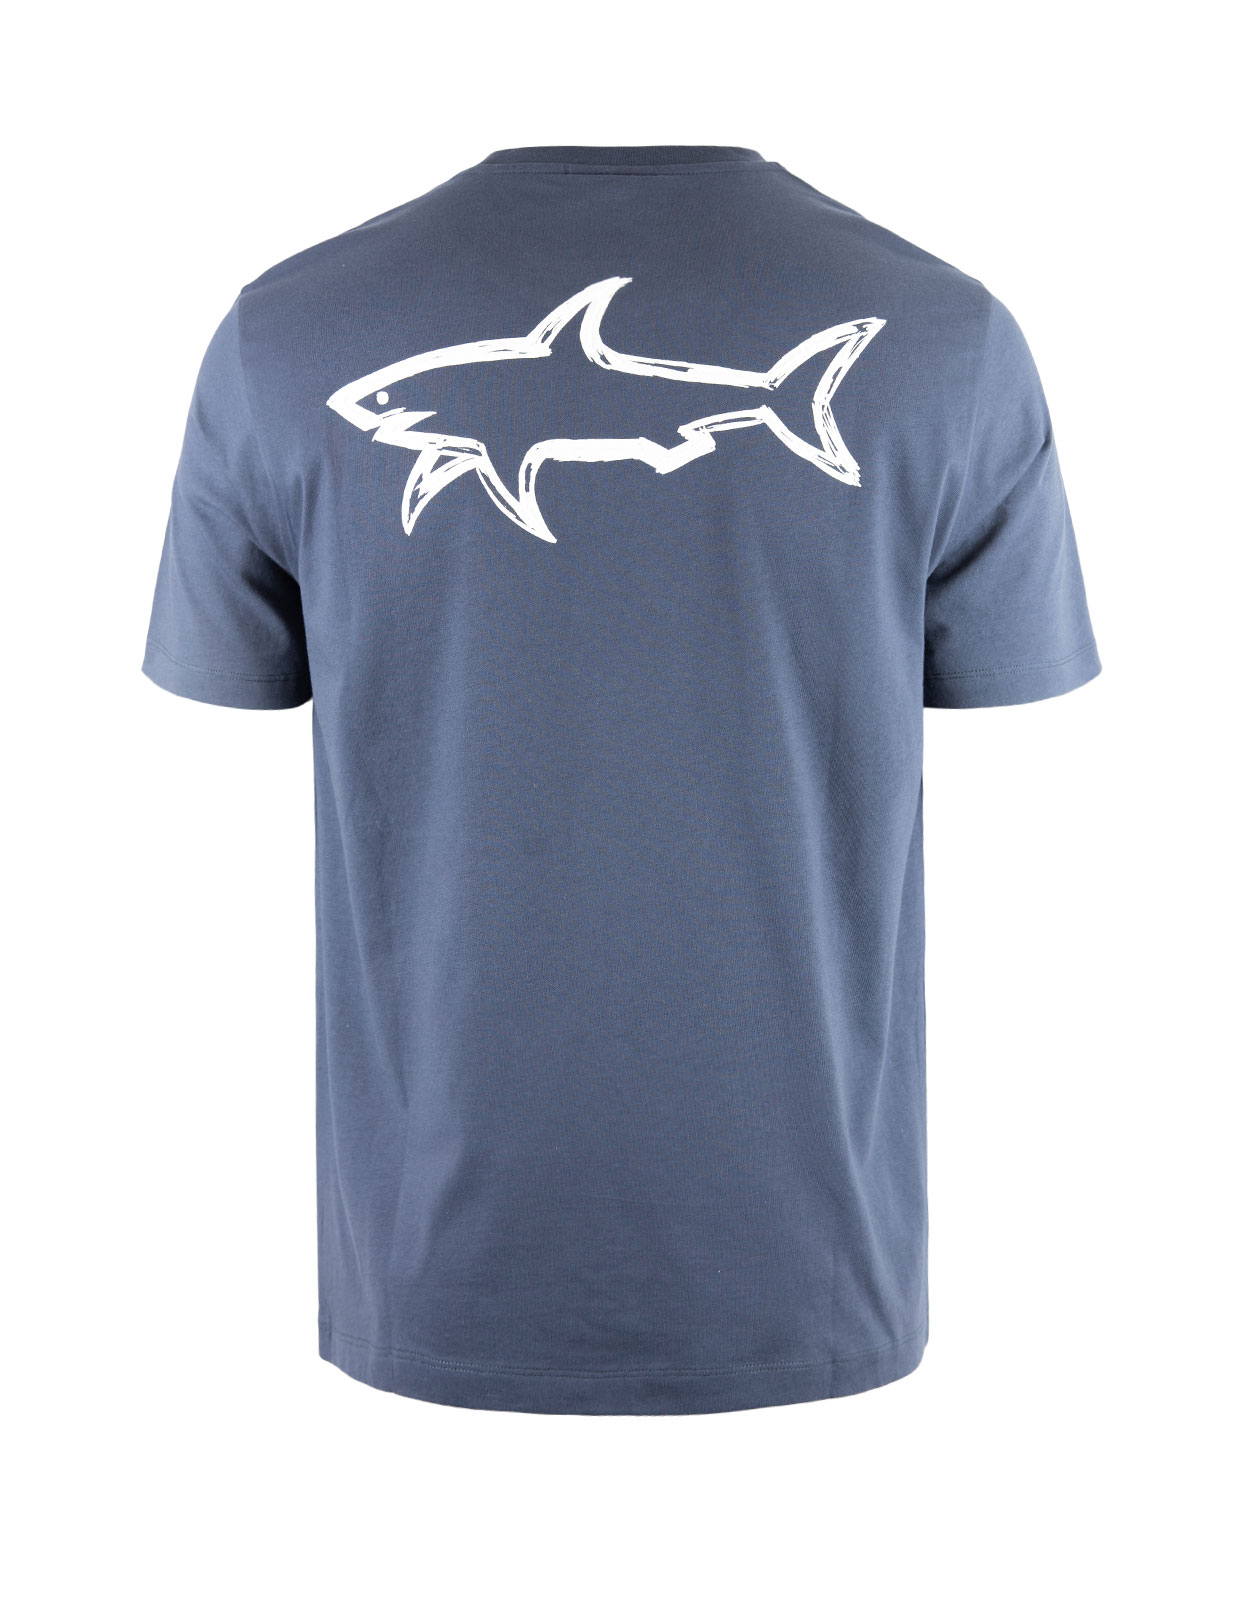 Shark Print T-Shirt Navy